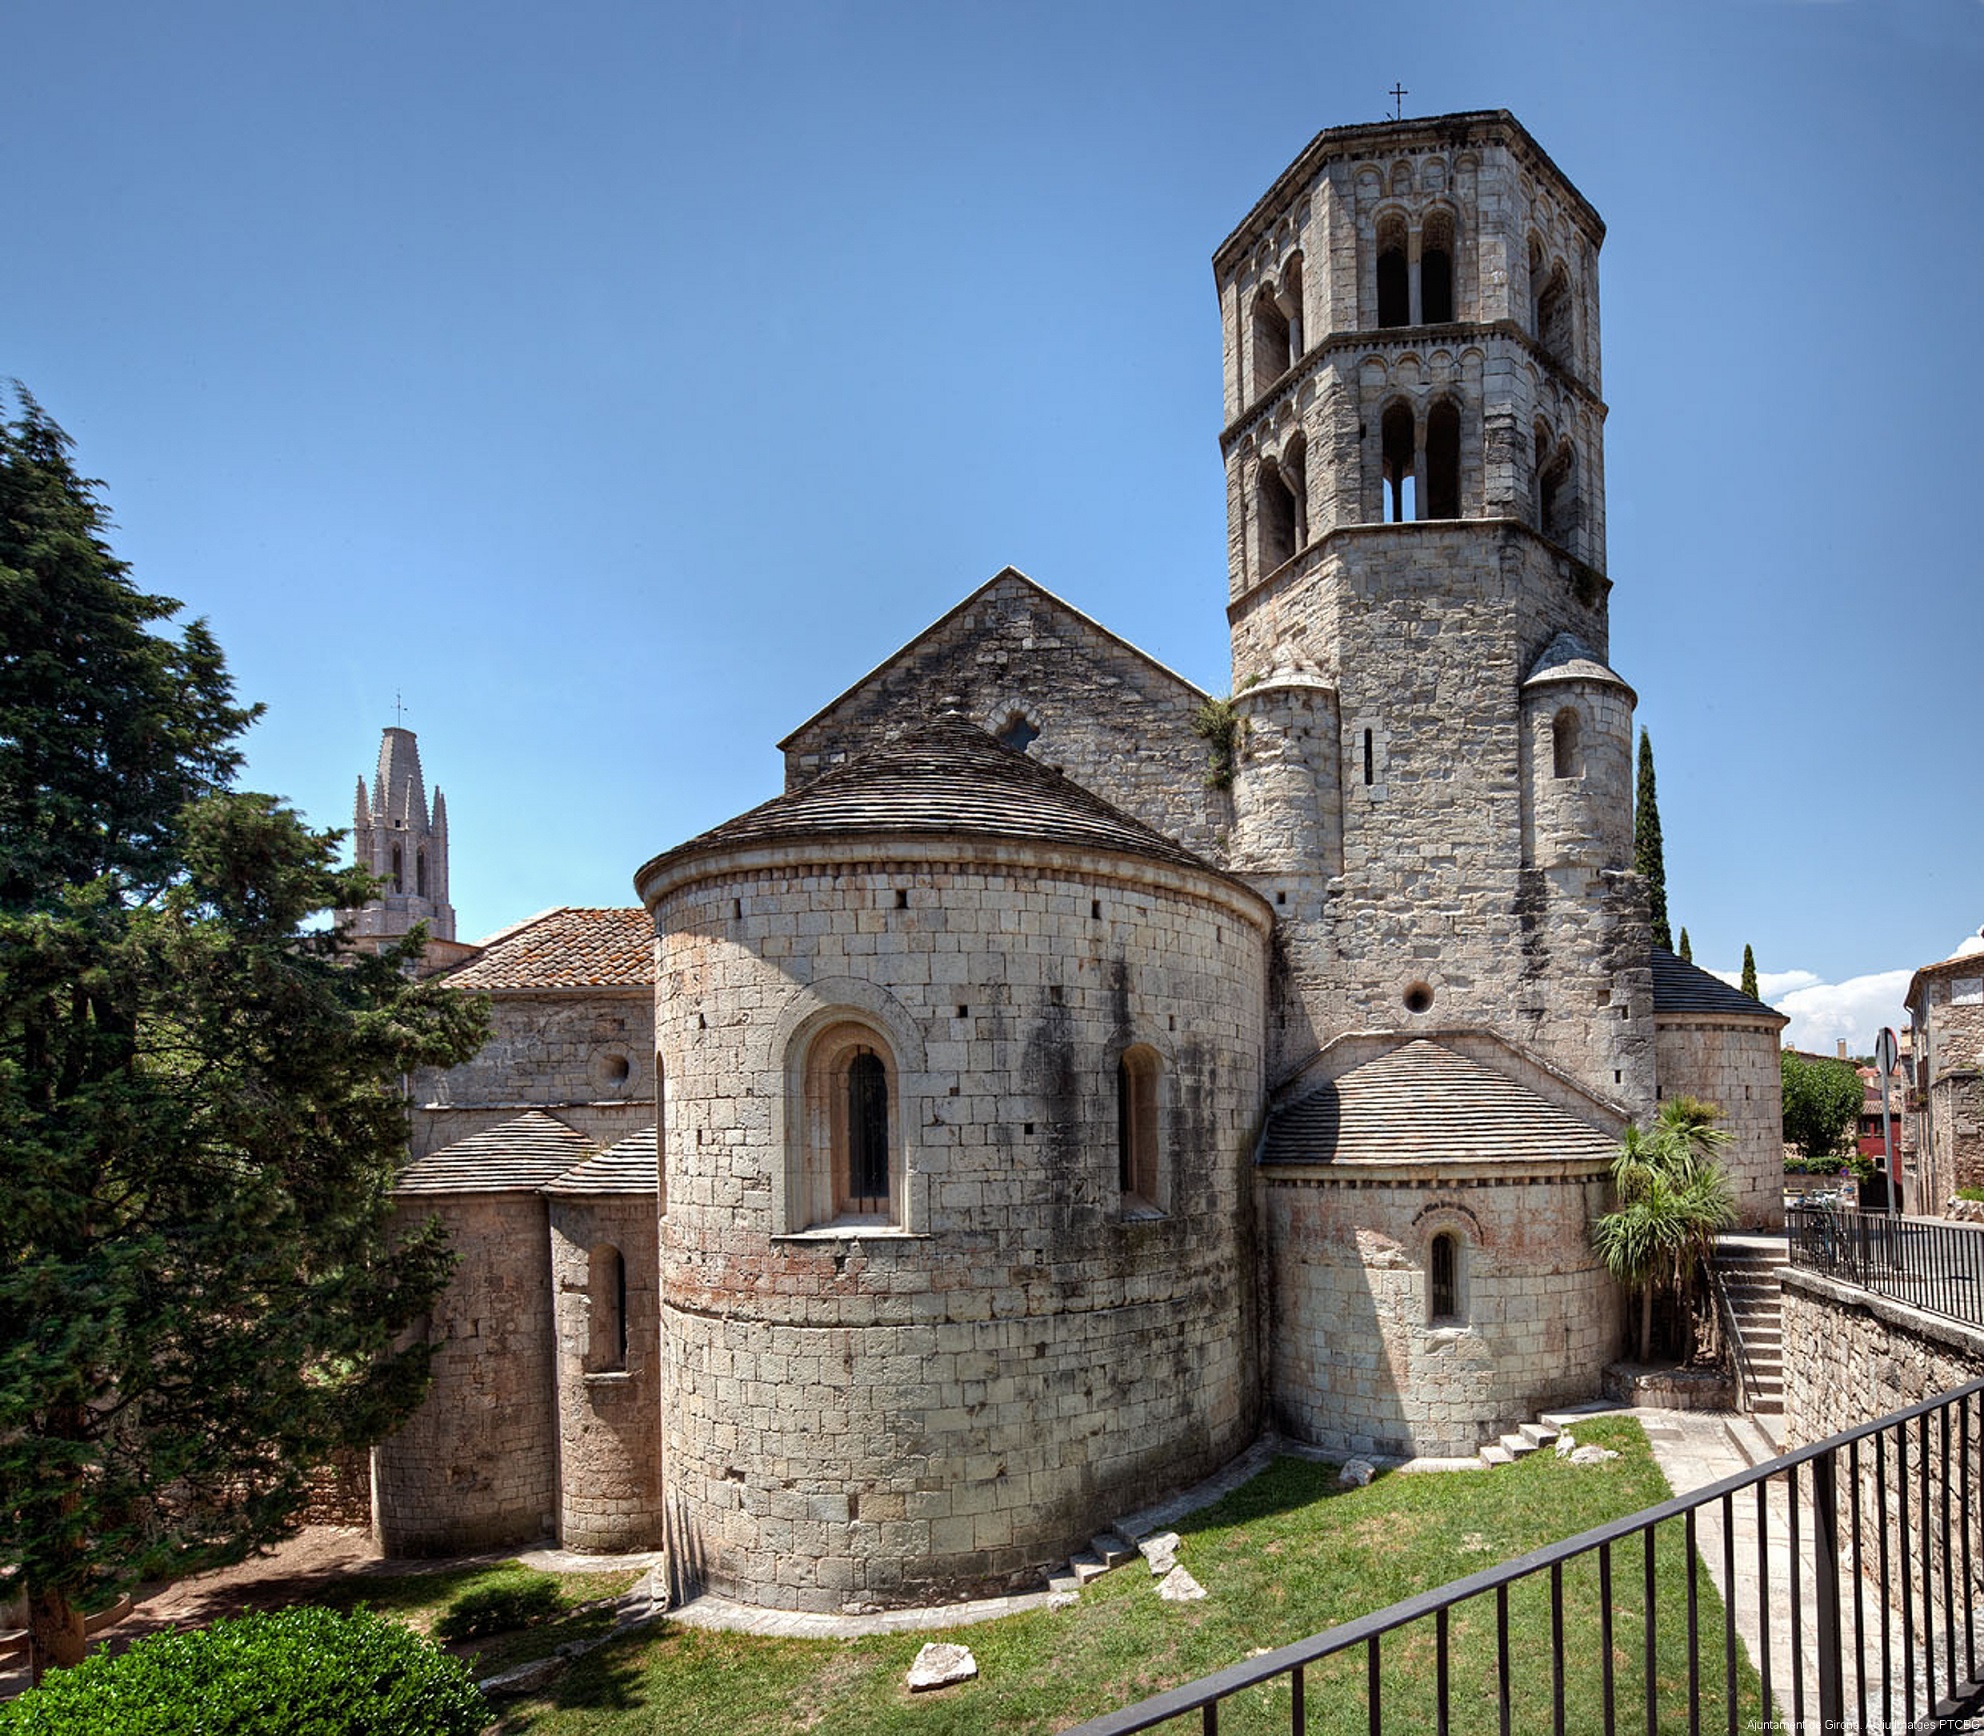  Monastery of Sant Pere de Galligants